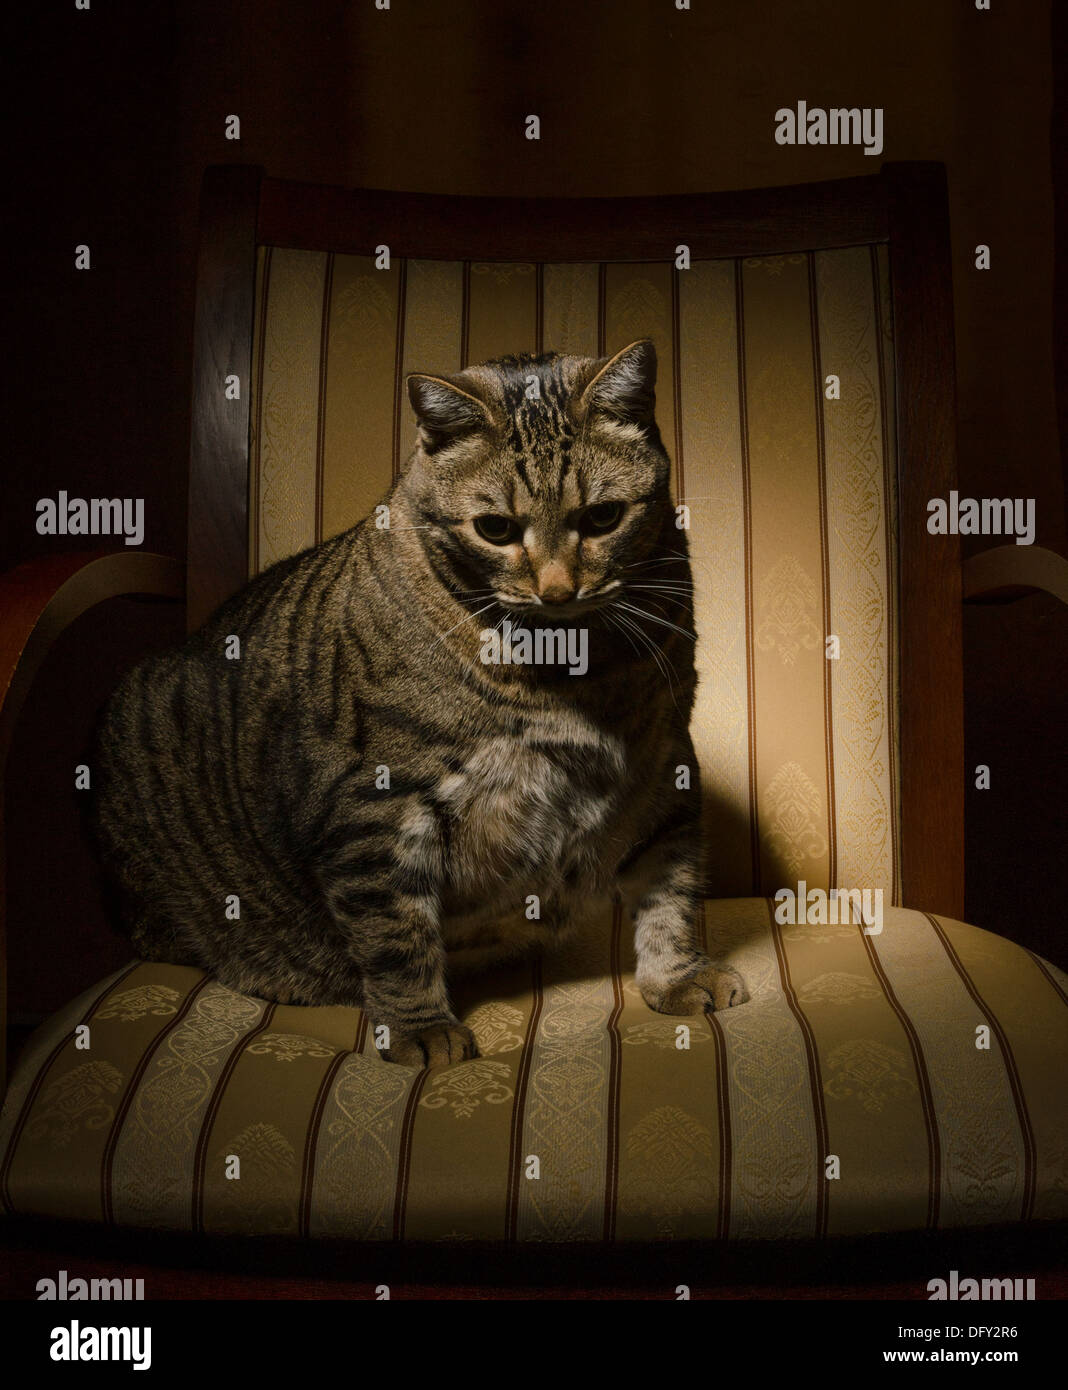 Gran gato gris sentado en una silla en una habitación oscura Foto de stock